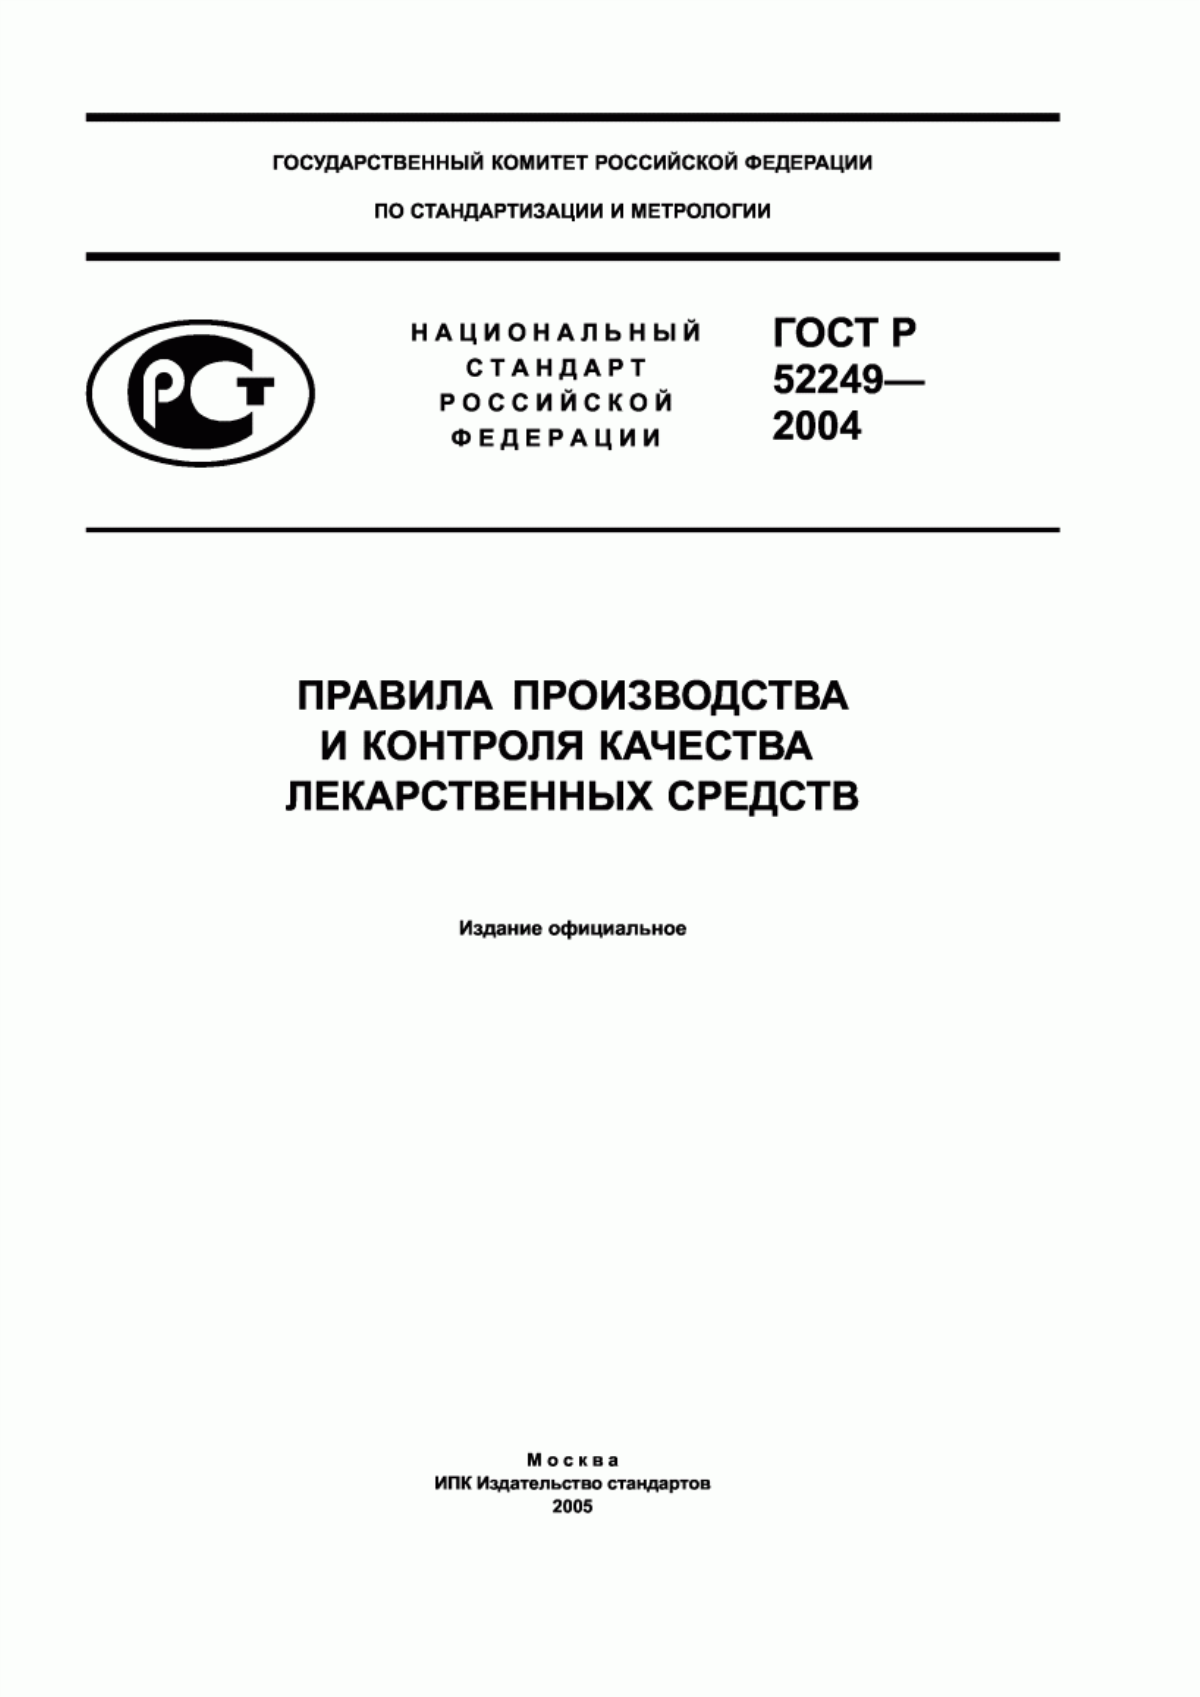 ГОСТ Р 52249-2004 Правила производства и контроля качества лекарственных средств